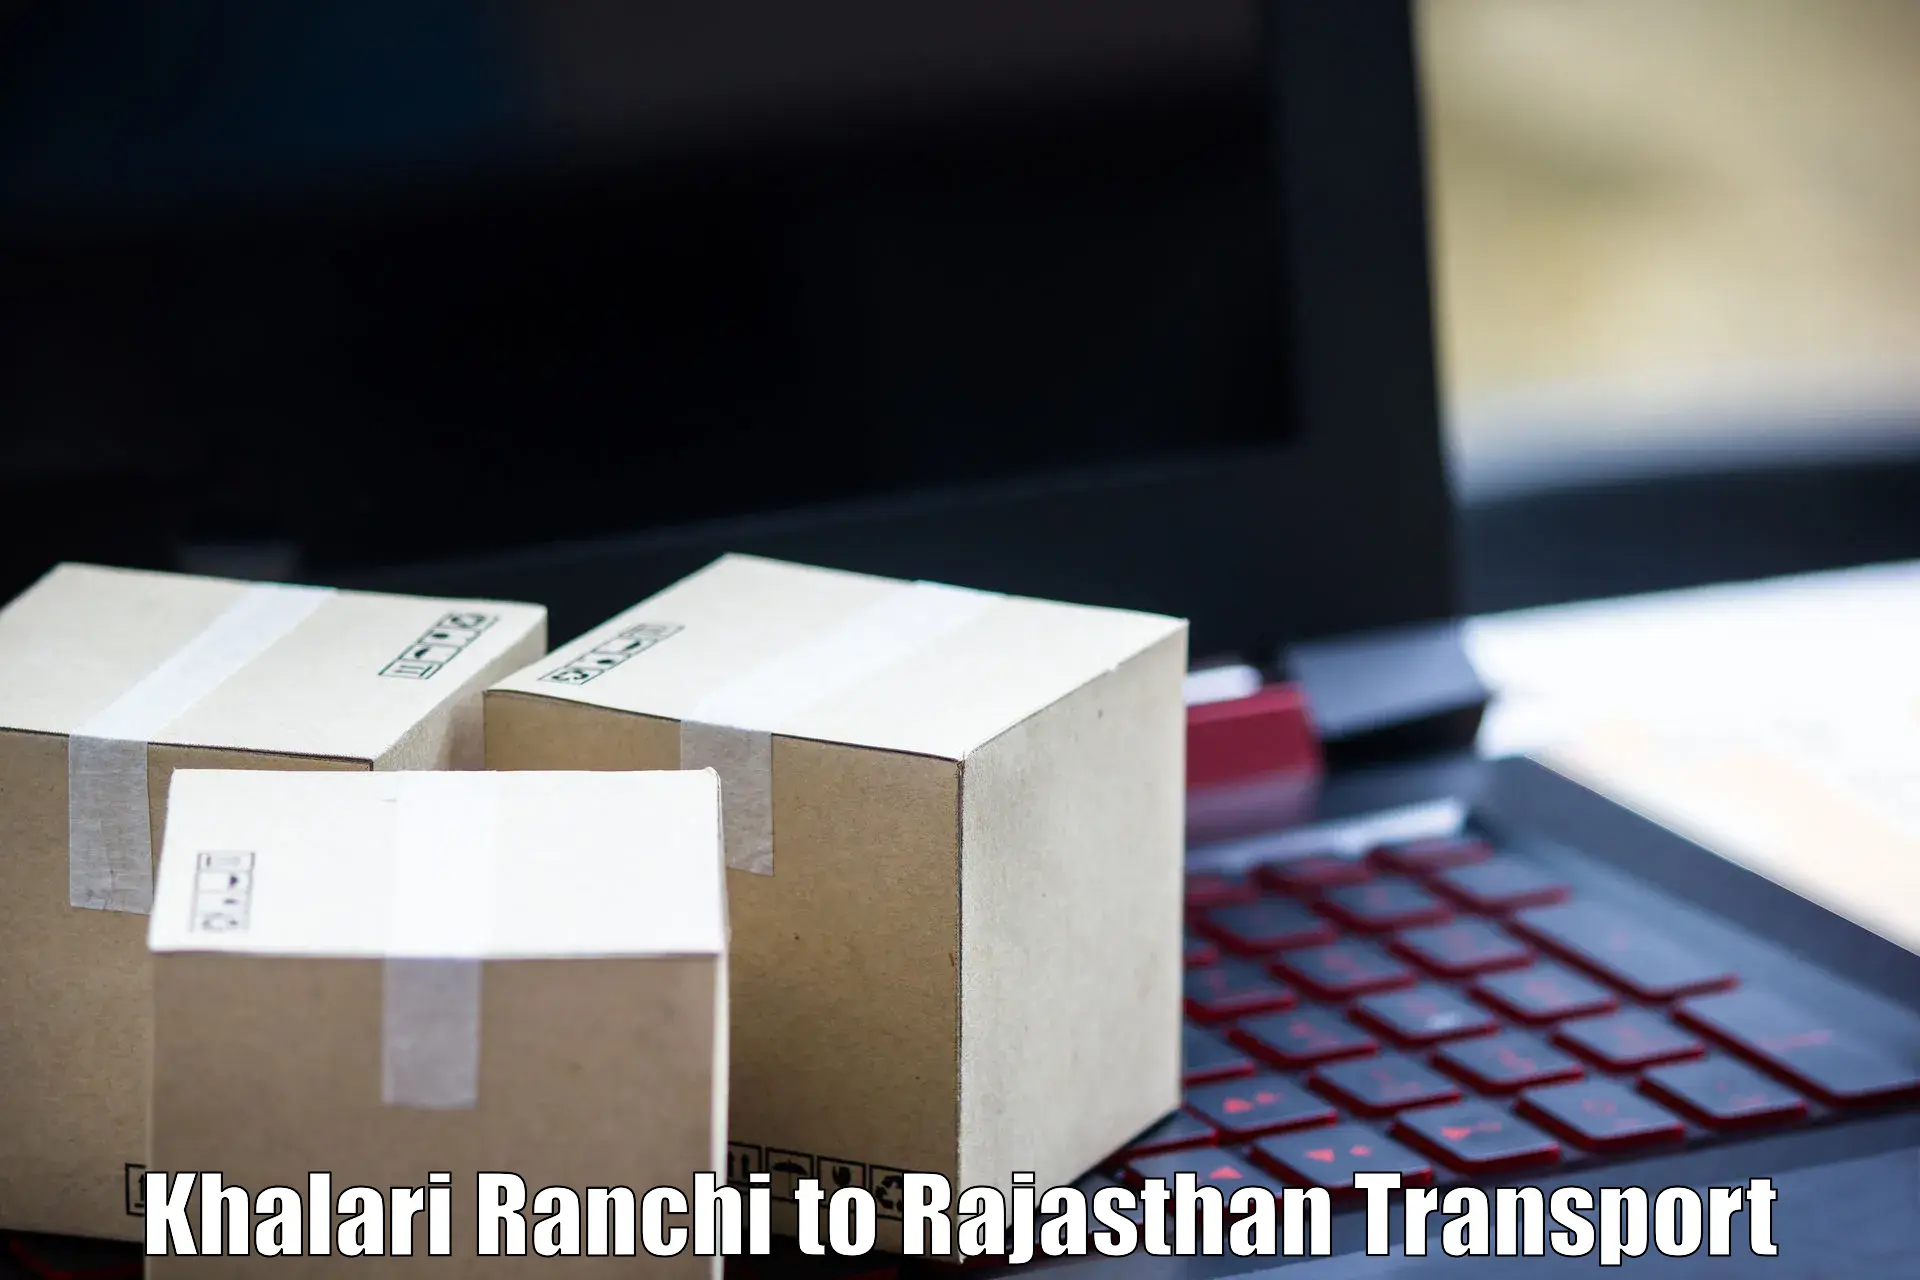 Furniture transport service Khalari Ranchi to Rajasthan